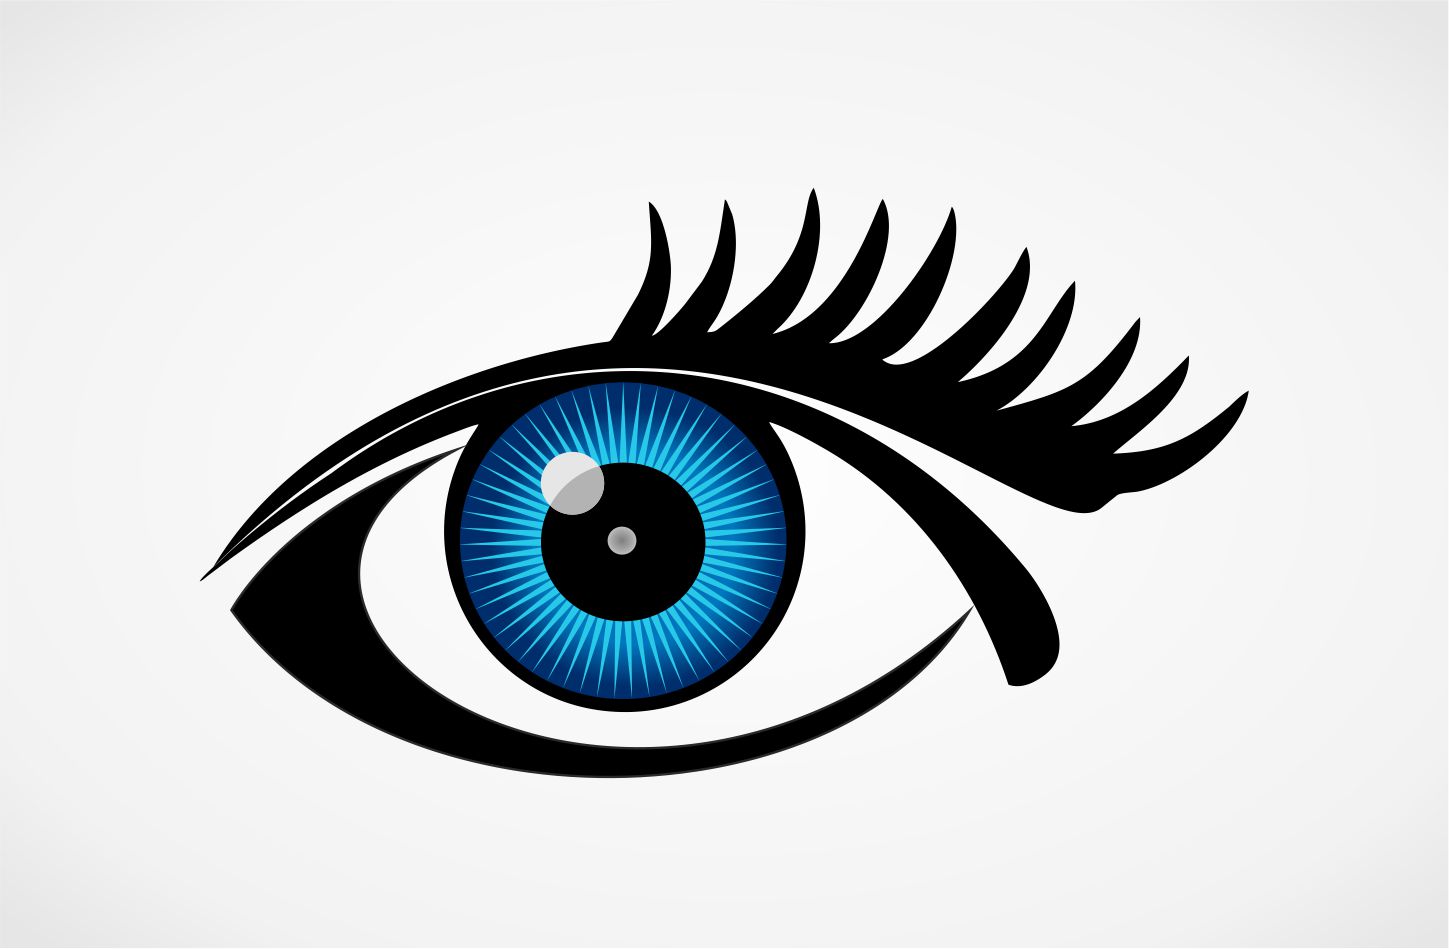  Eye  design Logos